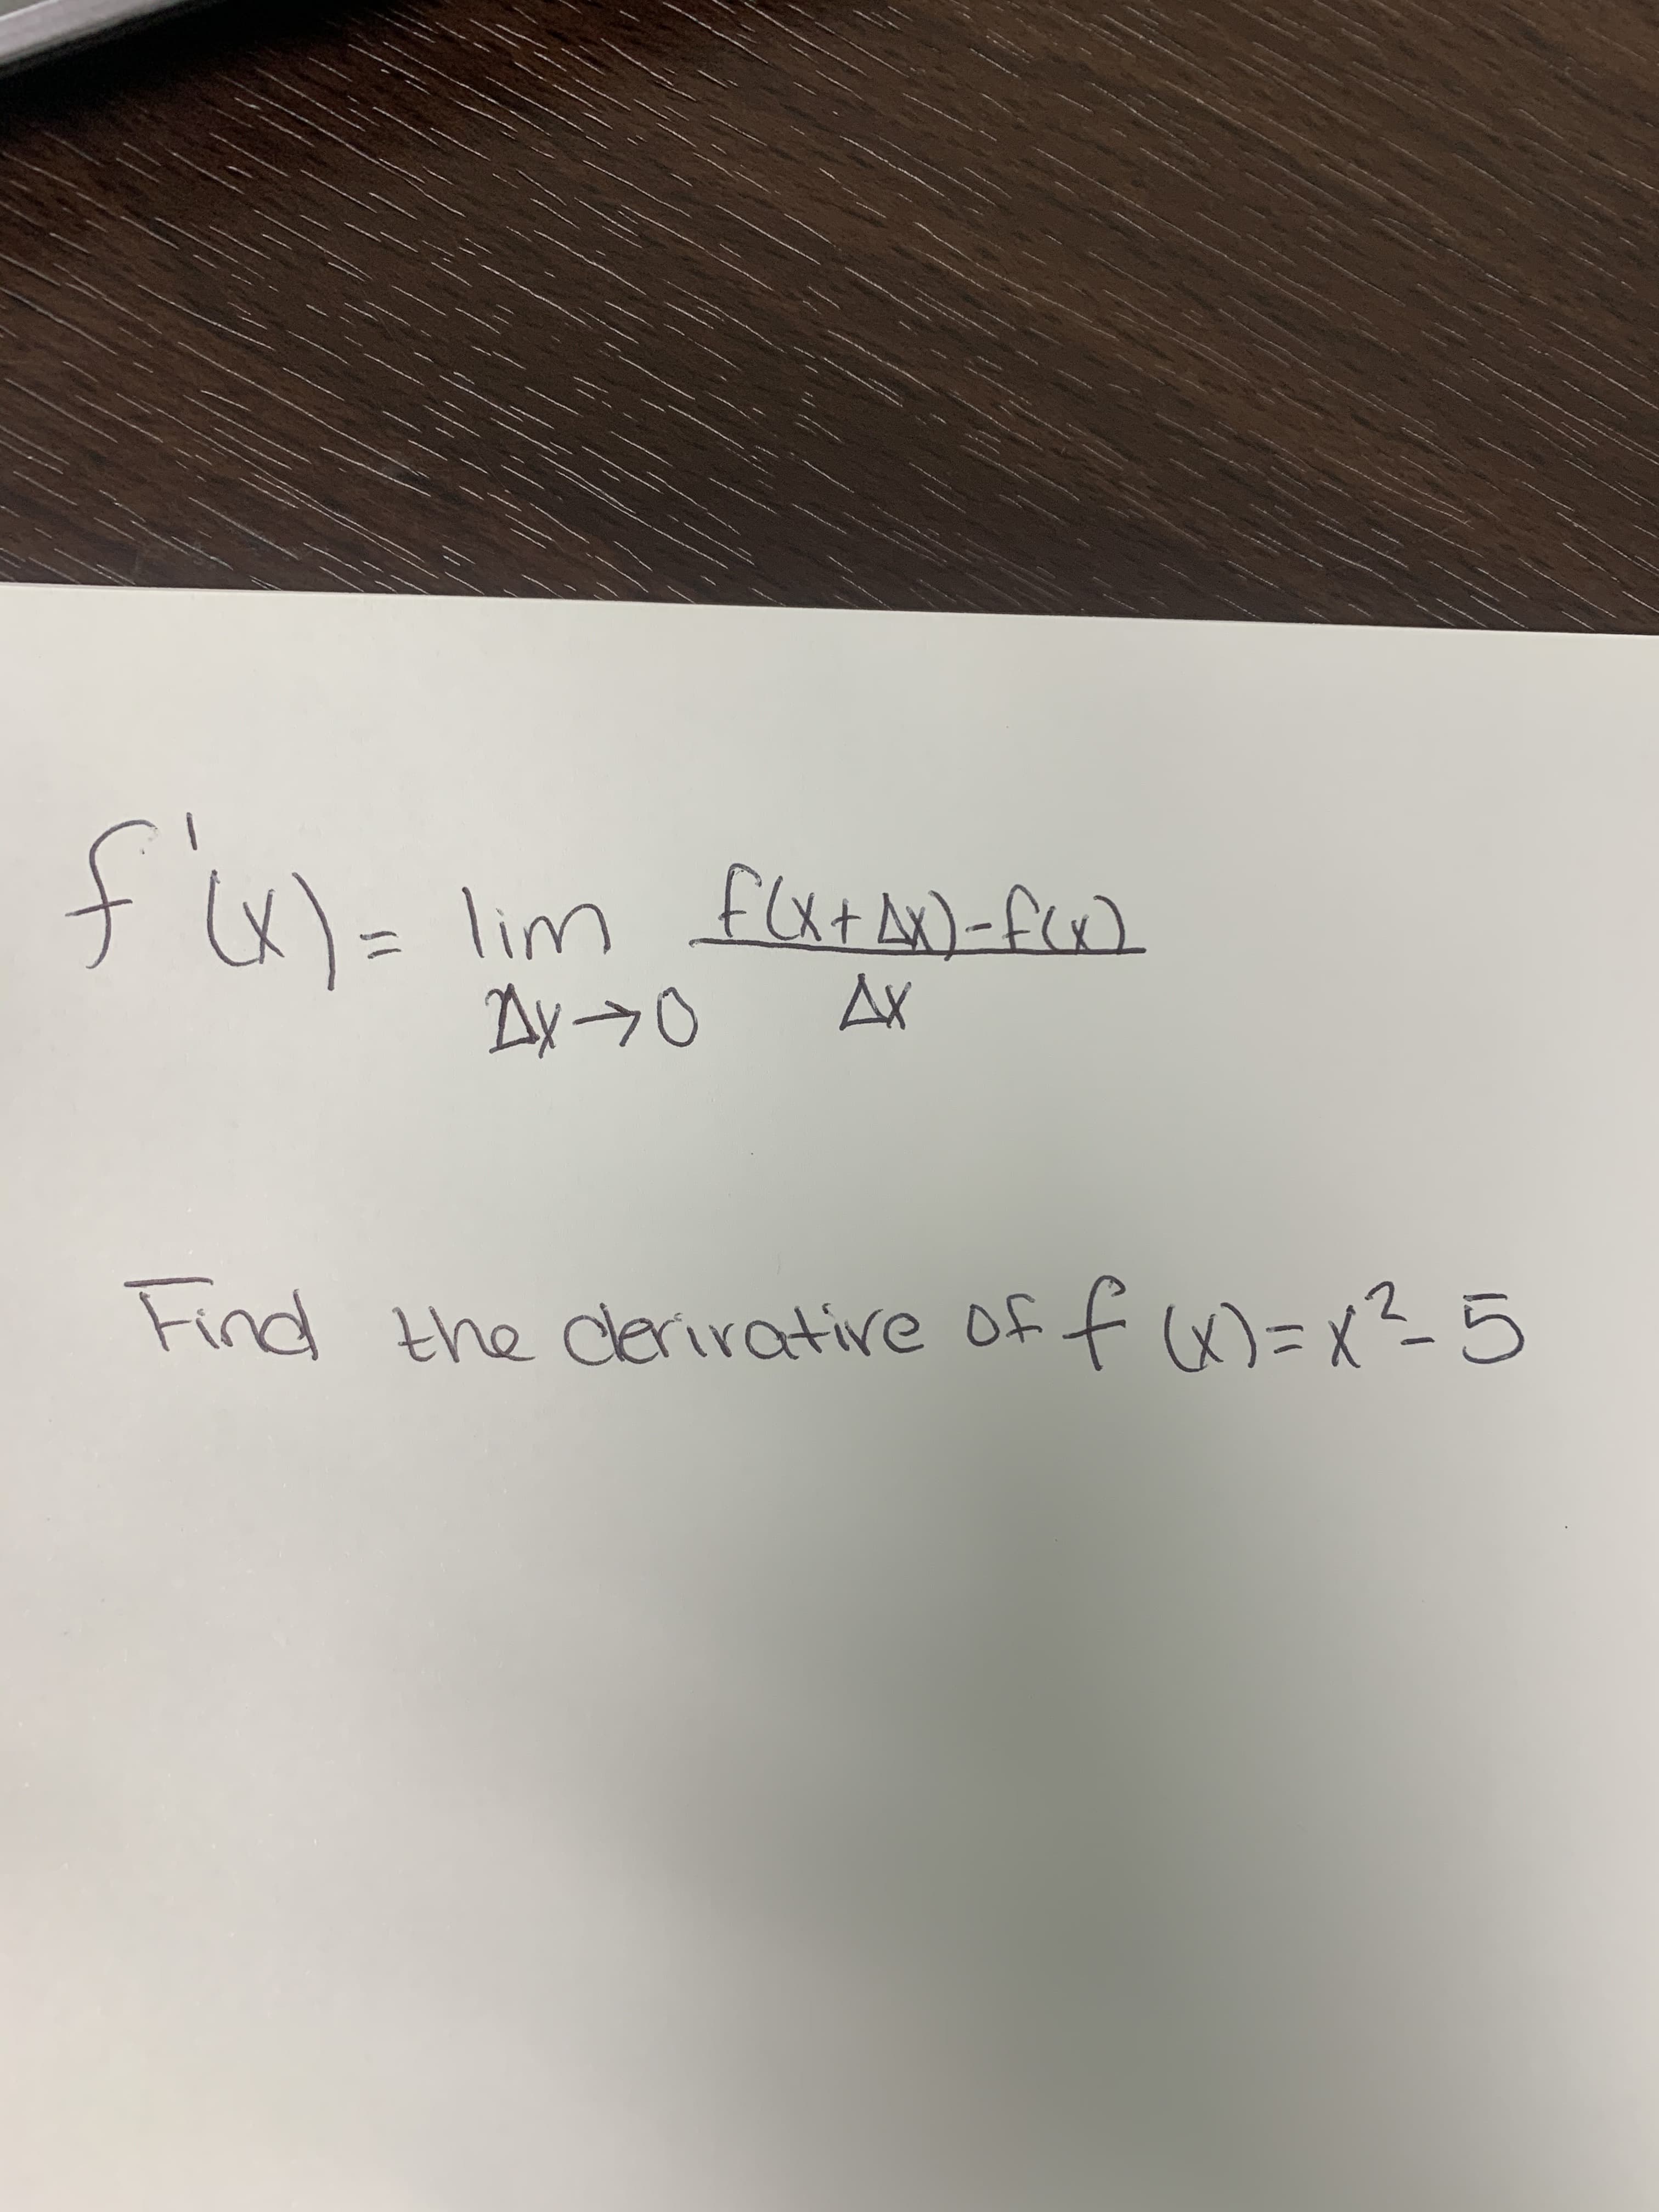 पि:
(x)=Dlim
lim fut A)-f)
Ay->0
AX
Find the derirative of
f x) =x?5
